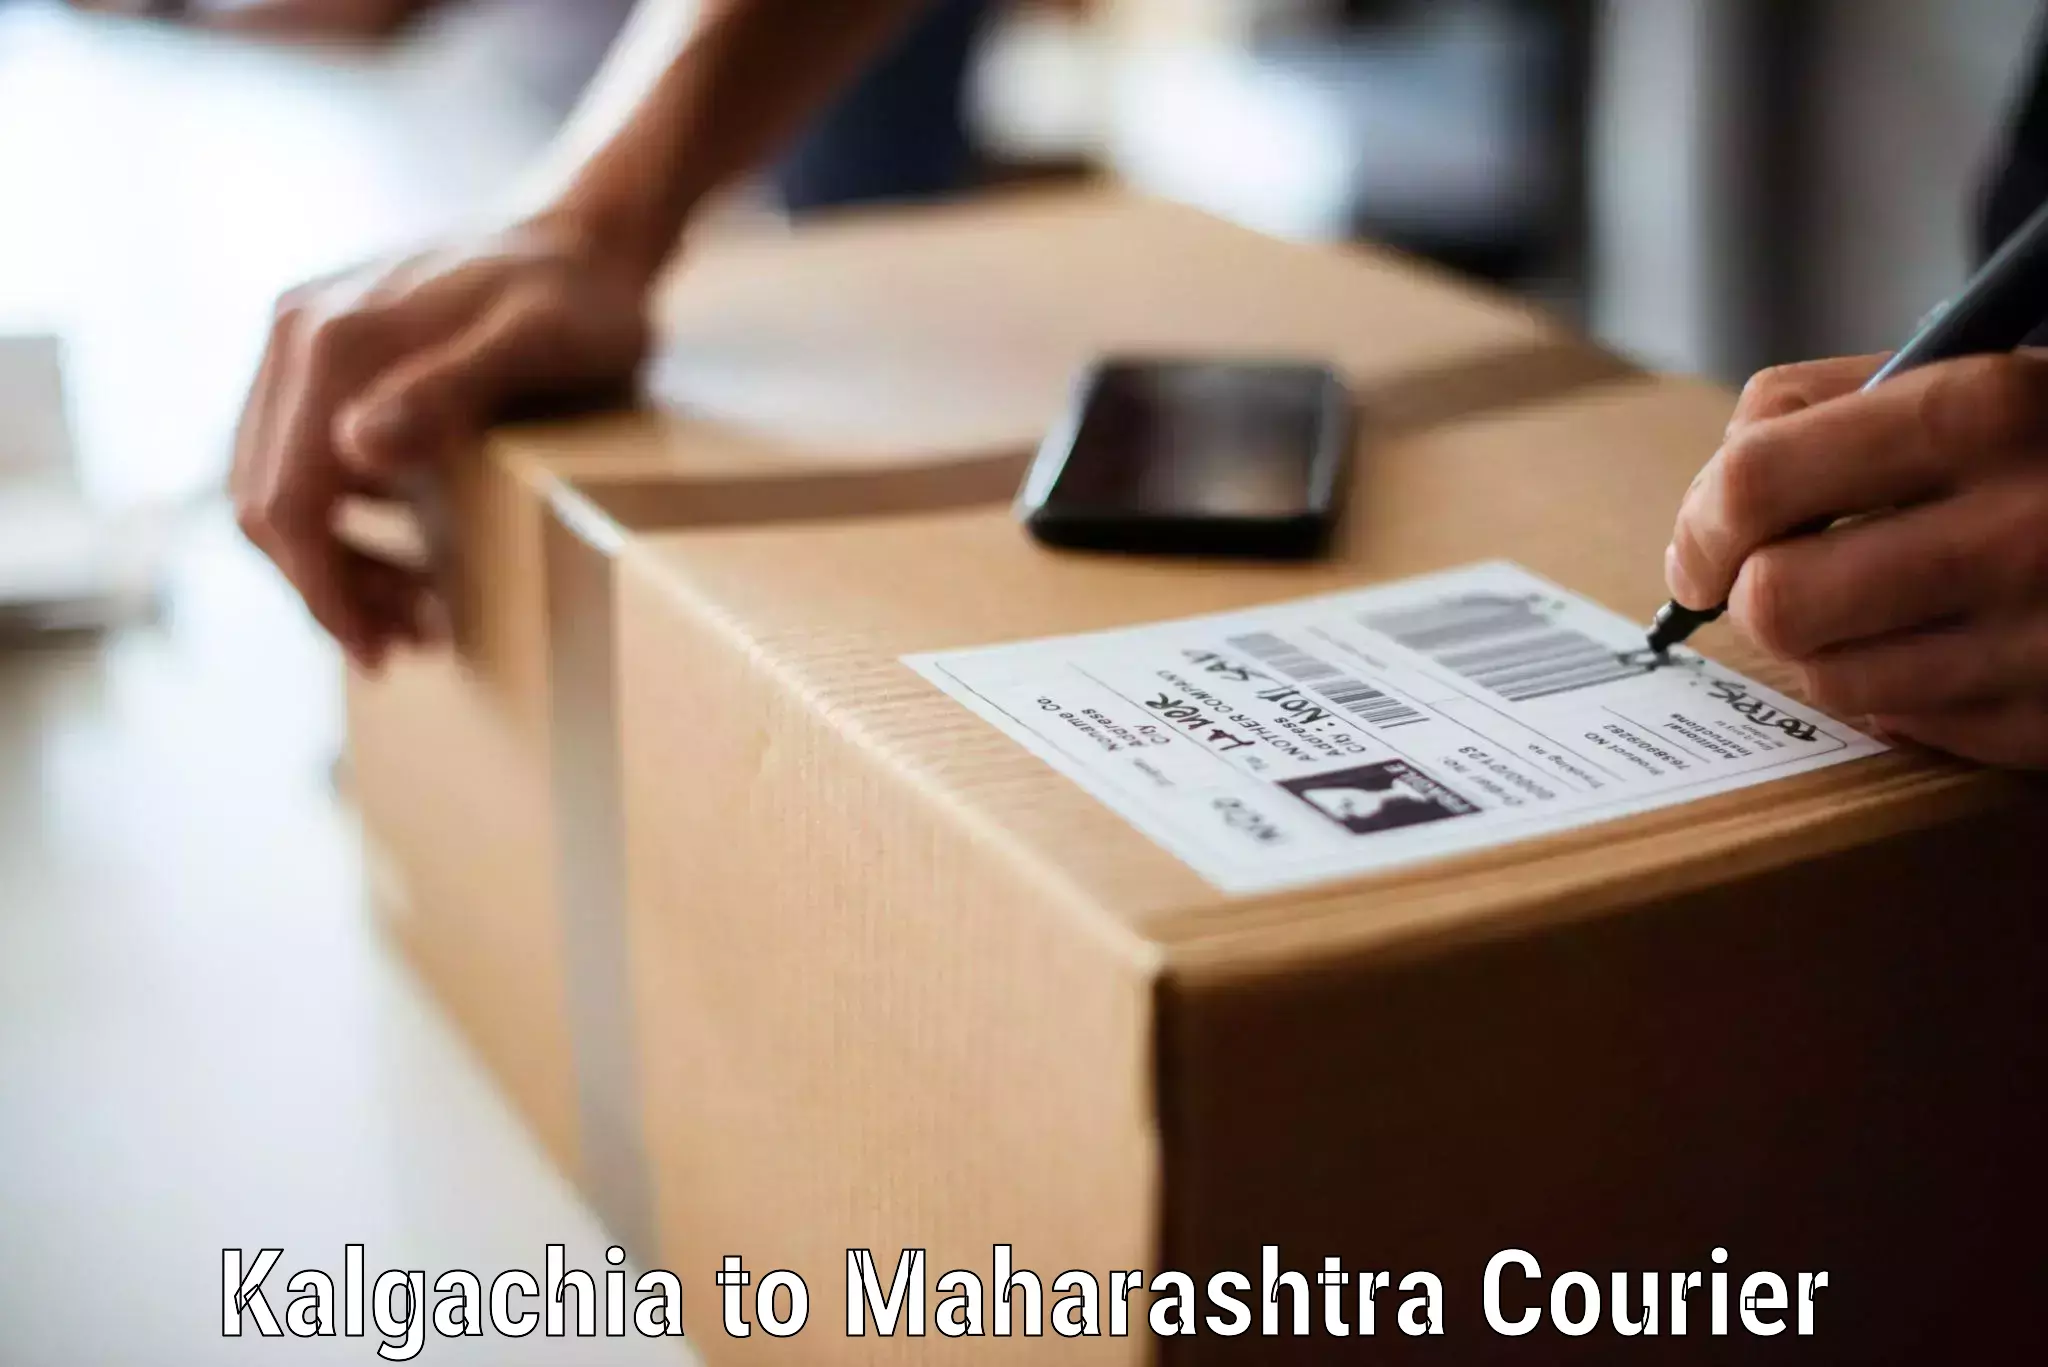 Furniture moving experts Kalgachia to Ahmednagar